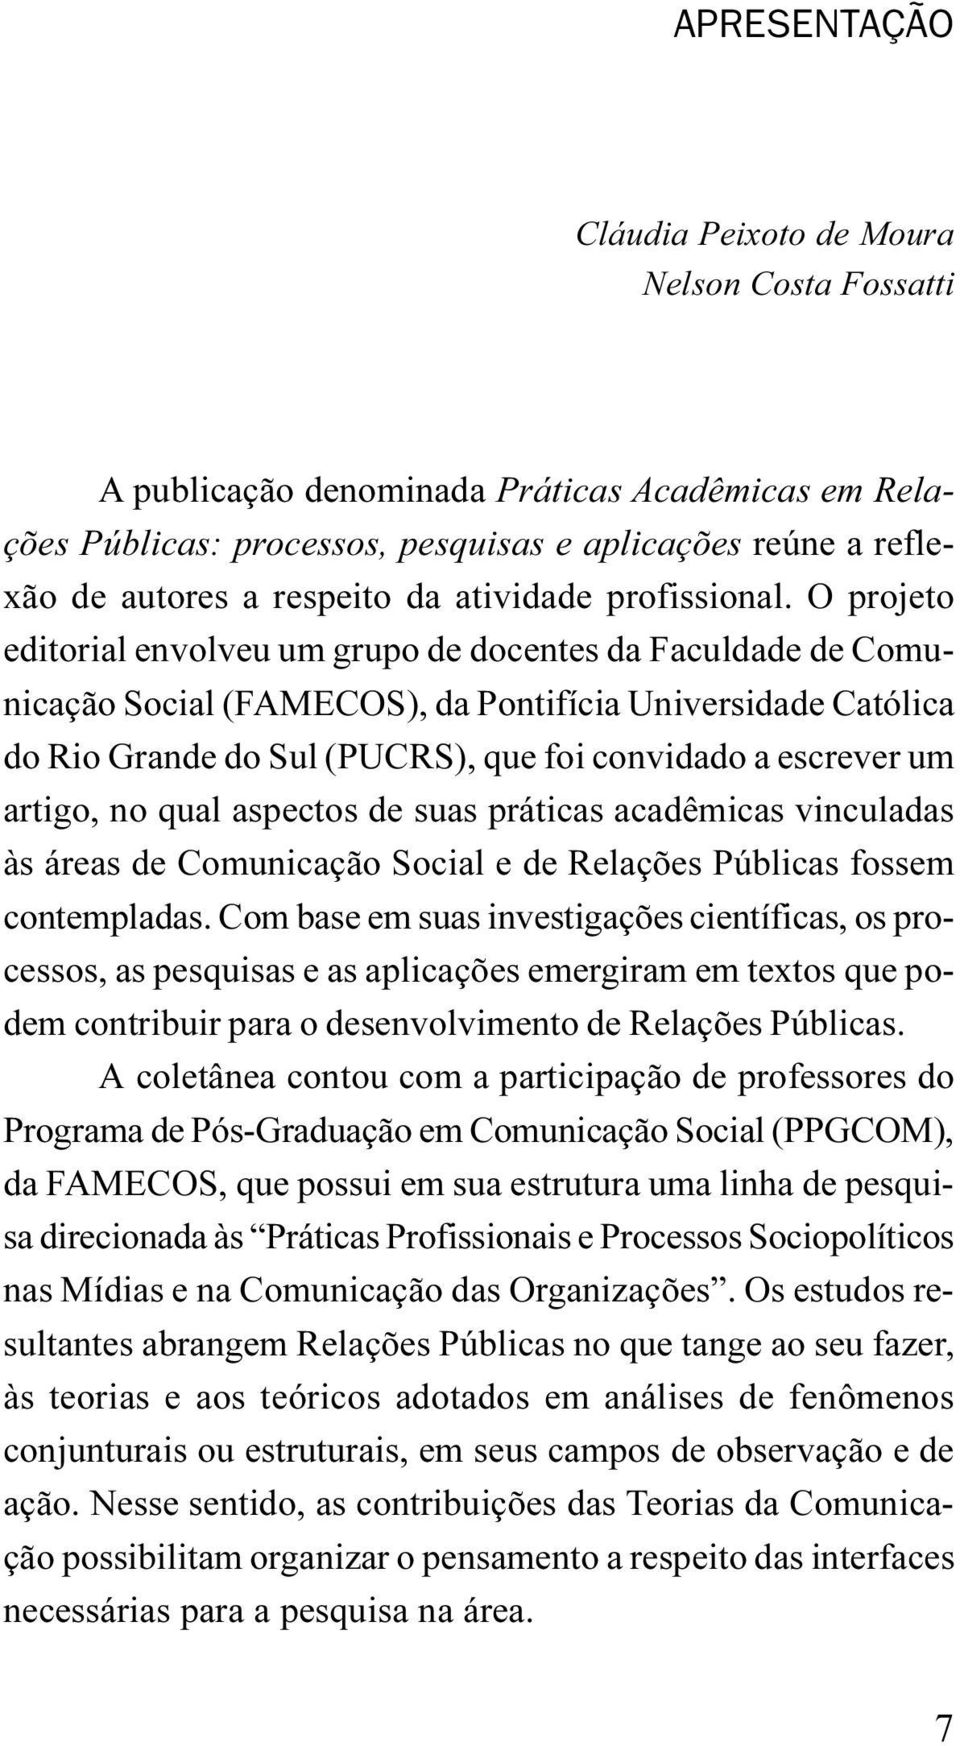 O projeto editorial envolveu um grupo de docentes da Faculdade de Comunicação Social (FAMECOS), da Pontifícia Universidade Católica do Rio Grande do Sul (PUCRS), que foi convidado a escrever um